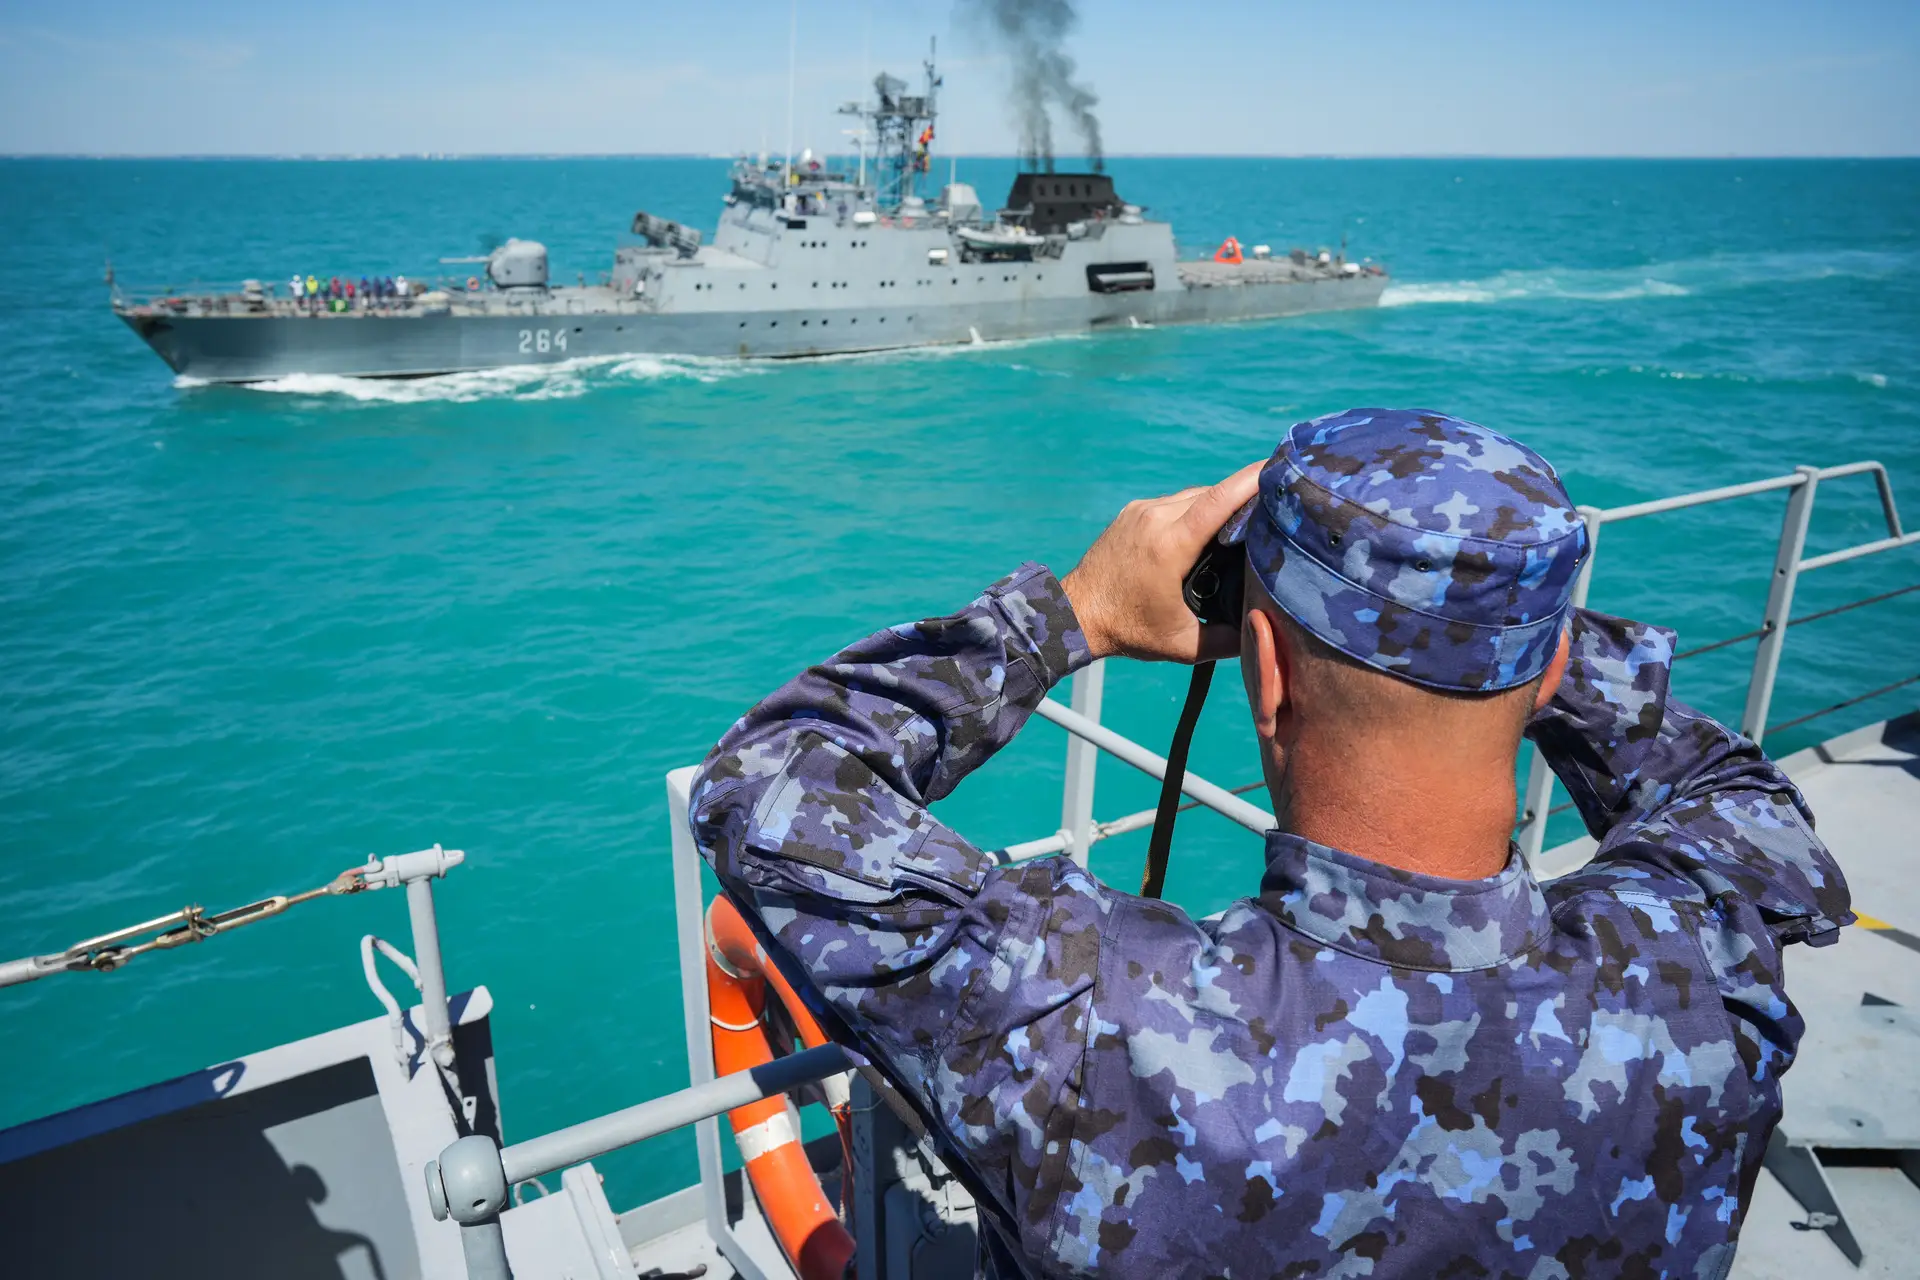 TREINO. Duas embarcações participam no exercício militar “Escudo Protetor”, no Mar Negro, perto da Roménia